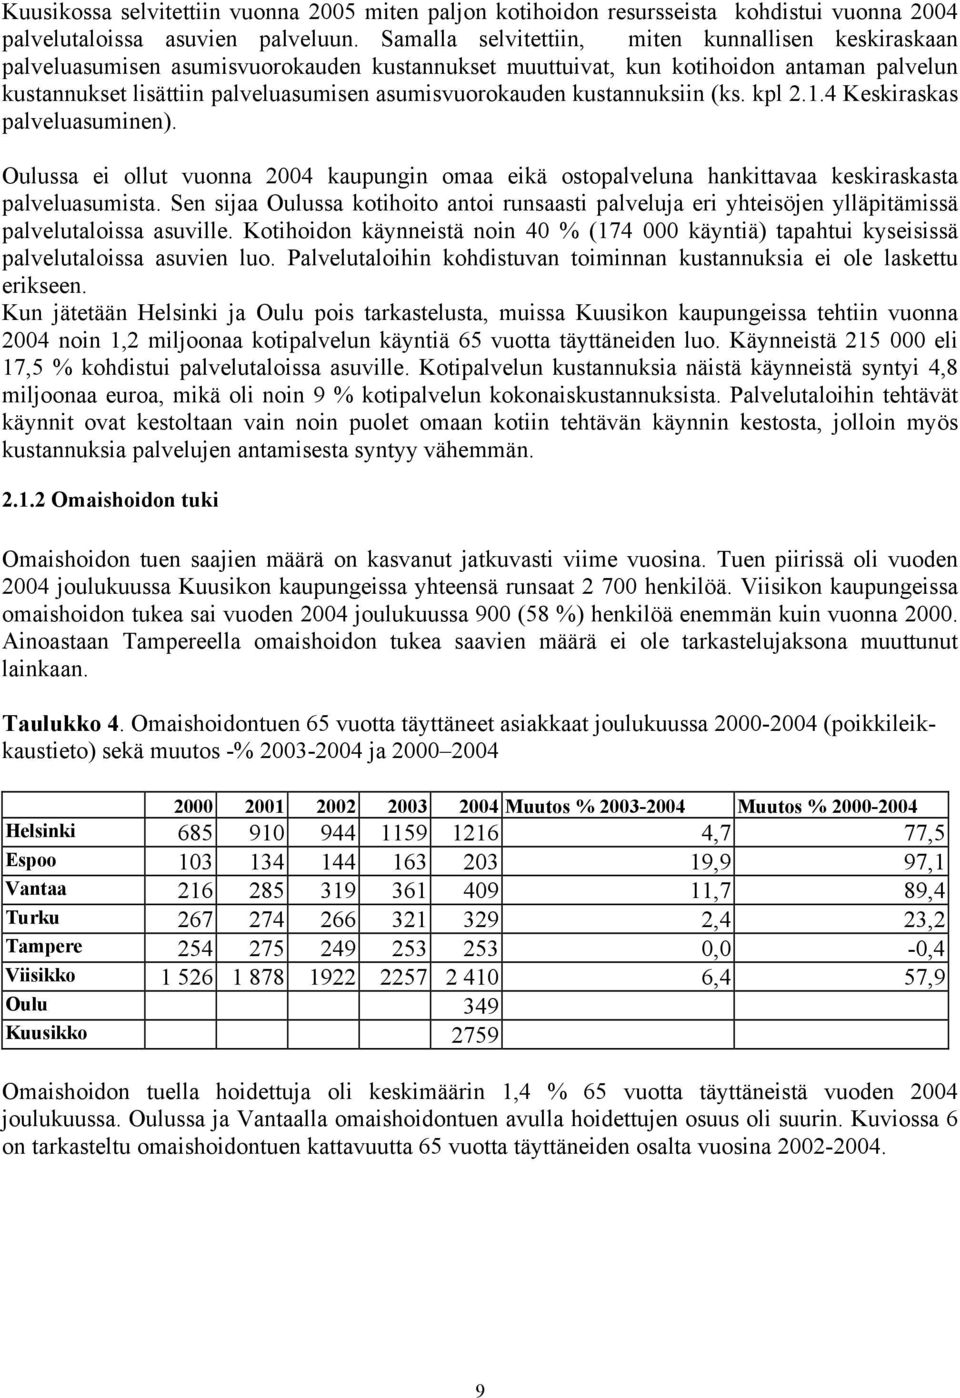 asumisvuorokauden kustannuksiin (ks. kpl 2.1.4 Keskiraskas palveluasuminen). Oulussa ei ollut vuonna 2004 kaupungin omaa eikä ostopalveluna hankittavaa keskiraskasta palveluasumista.